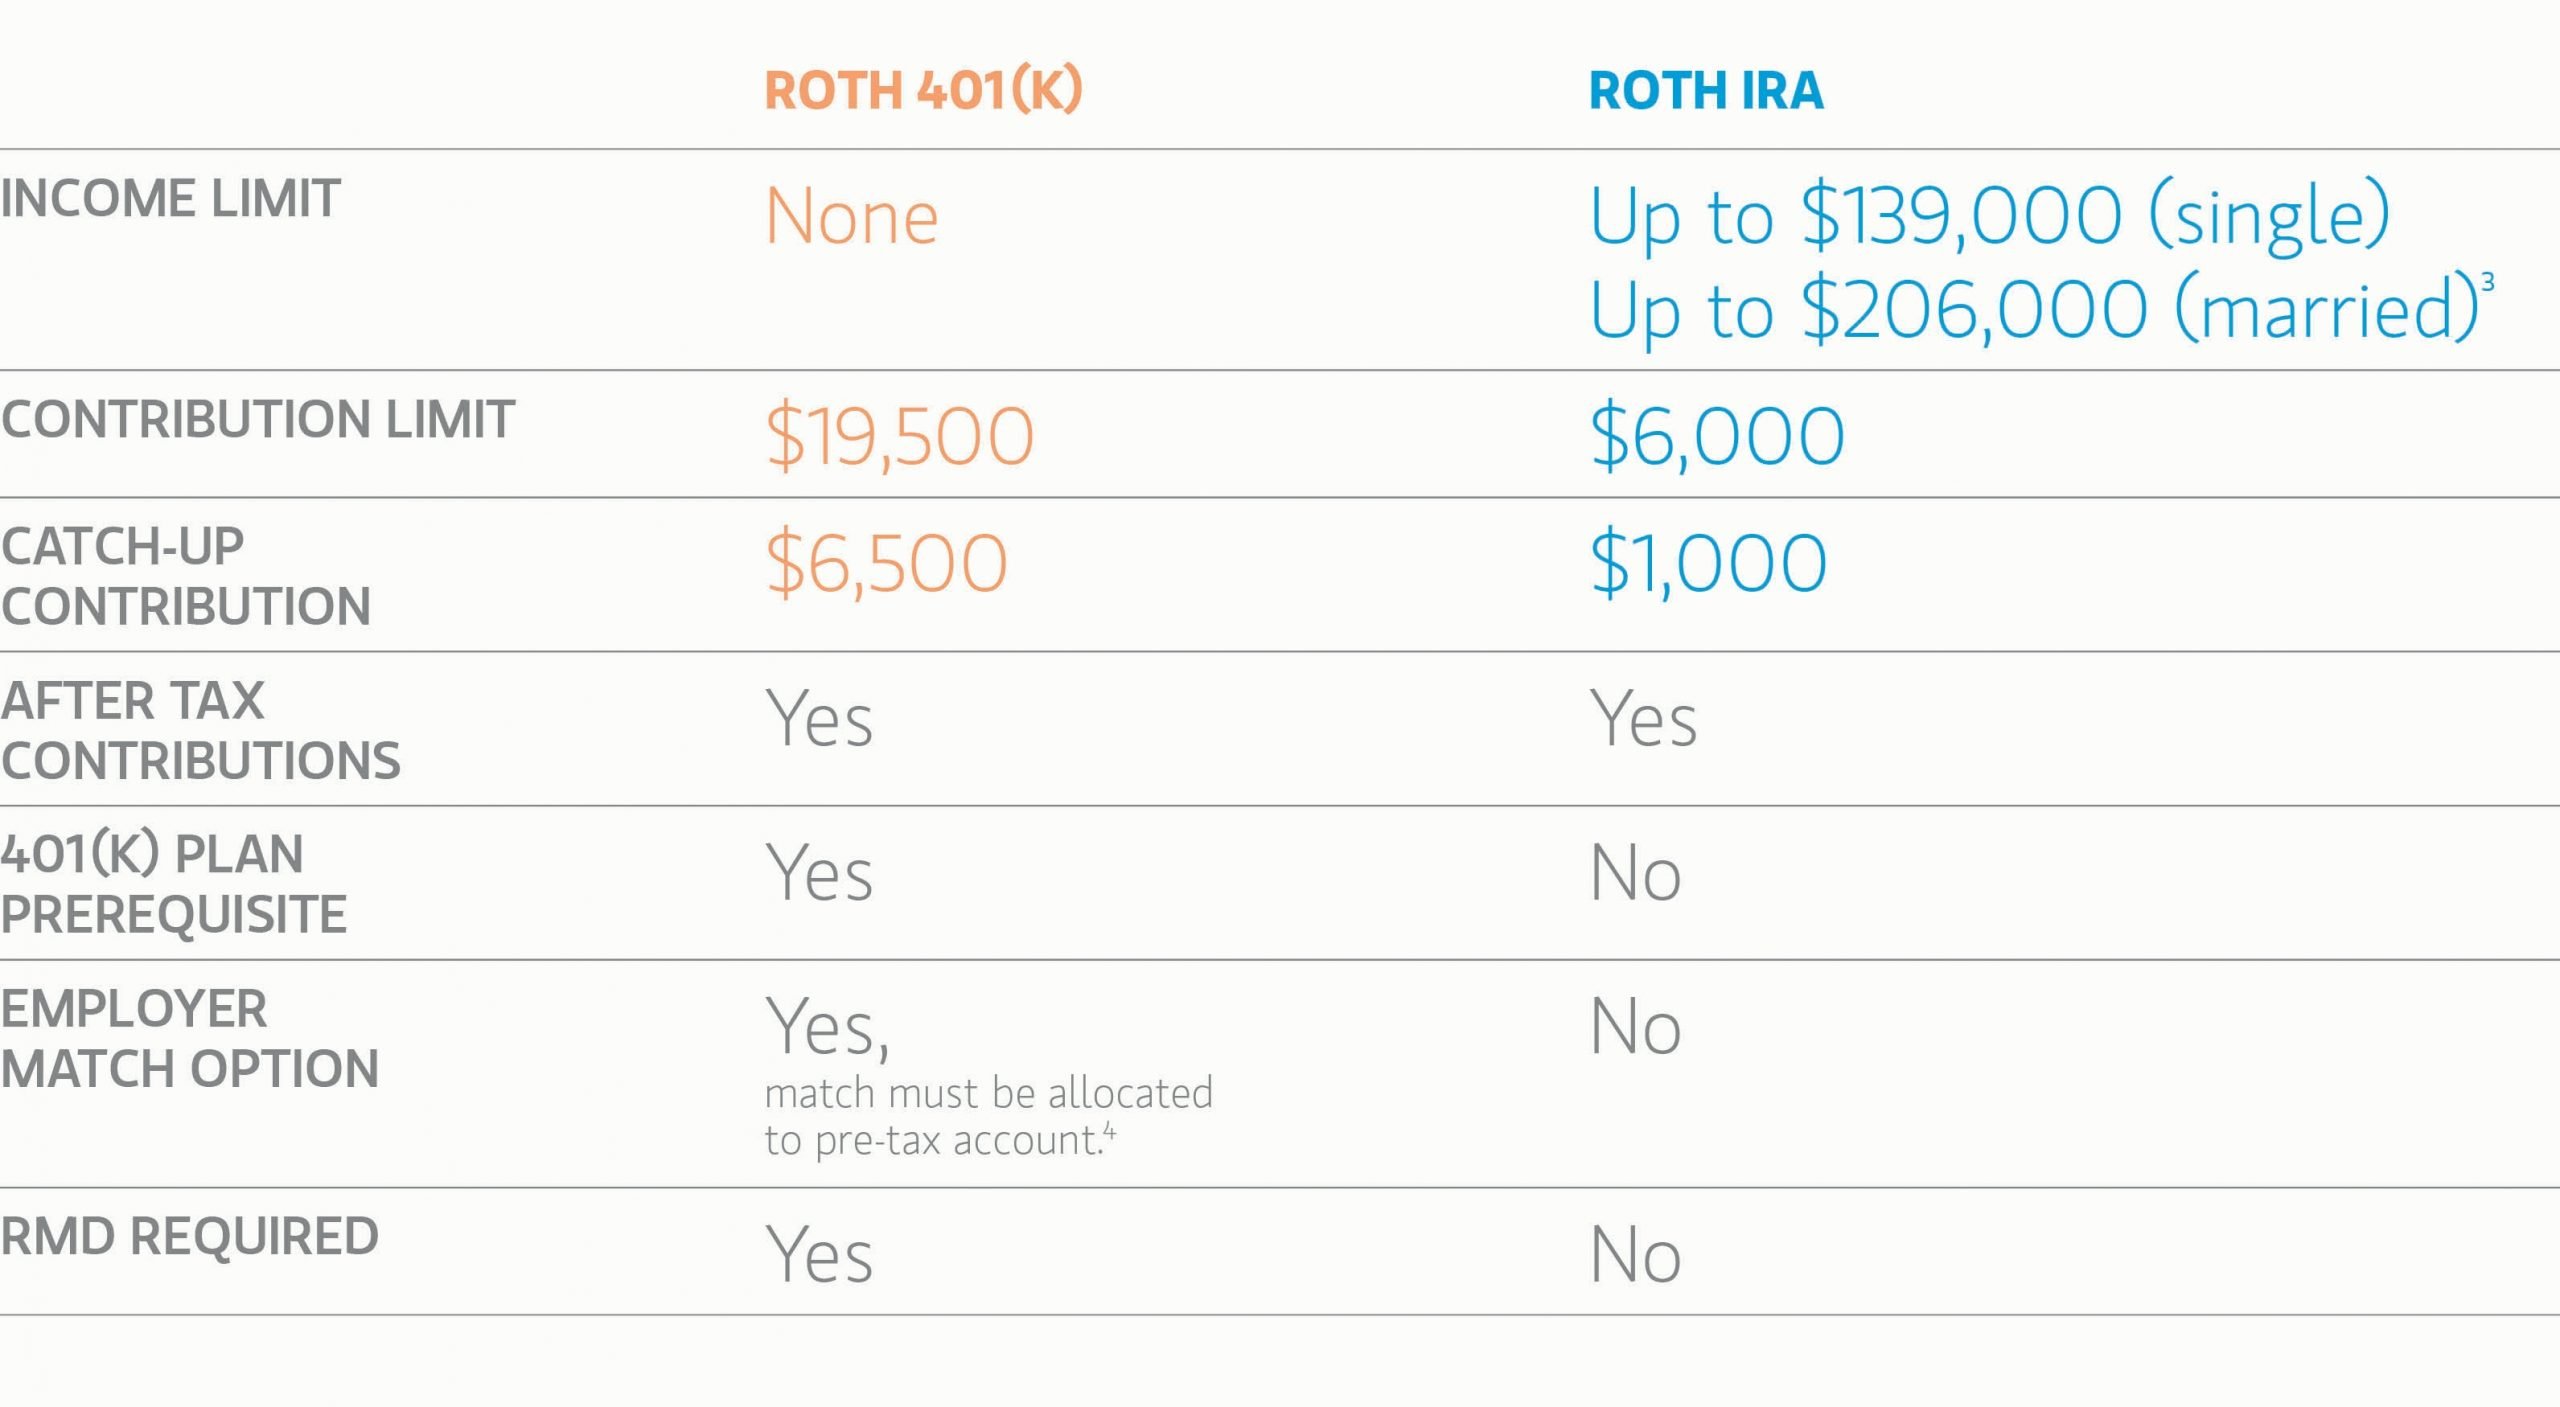 Roth 401(k) + In